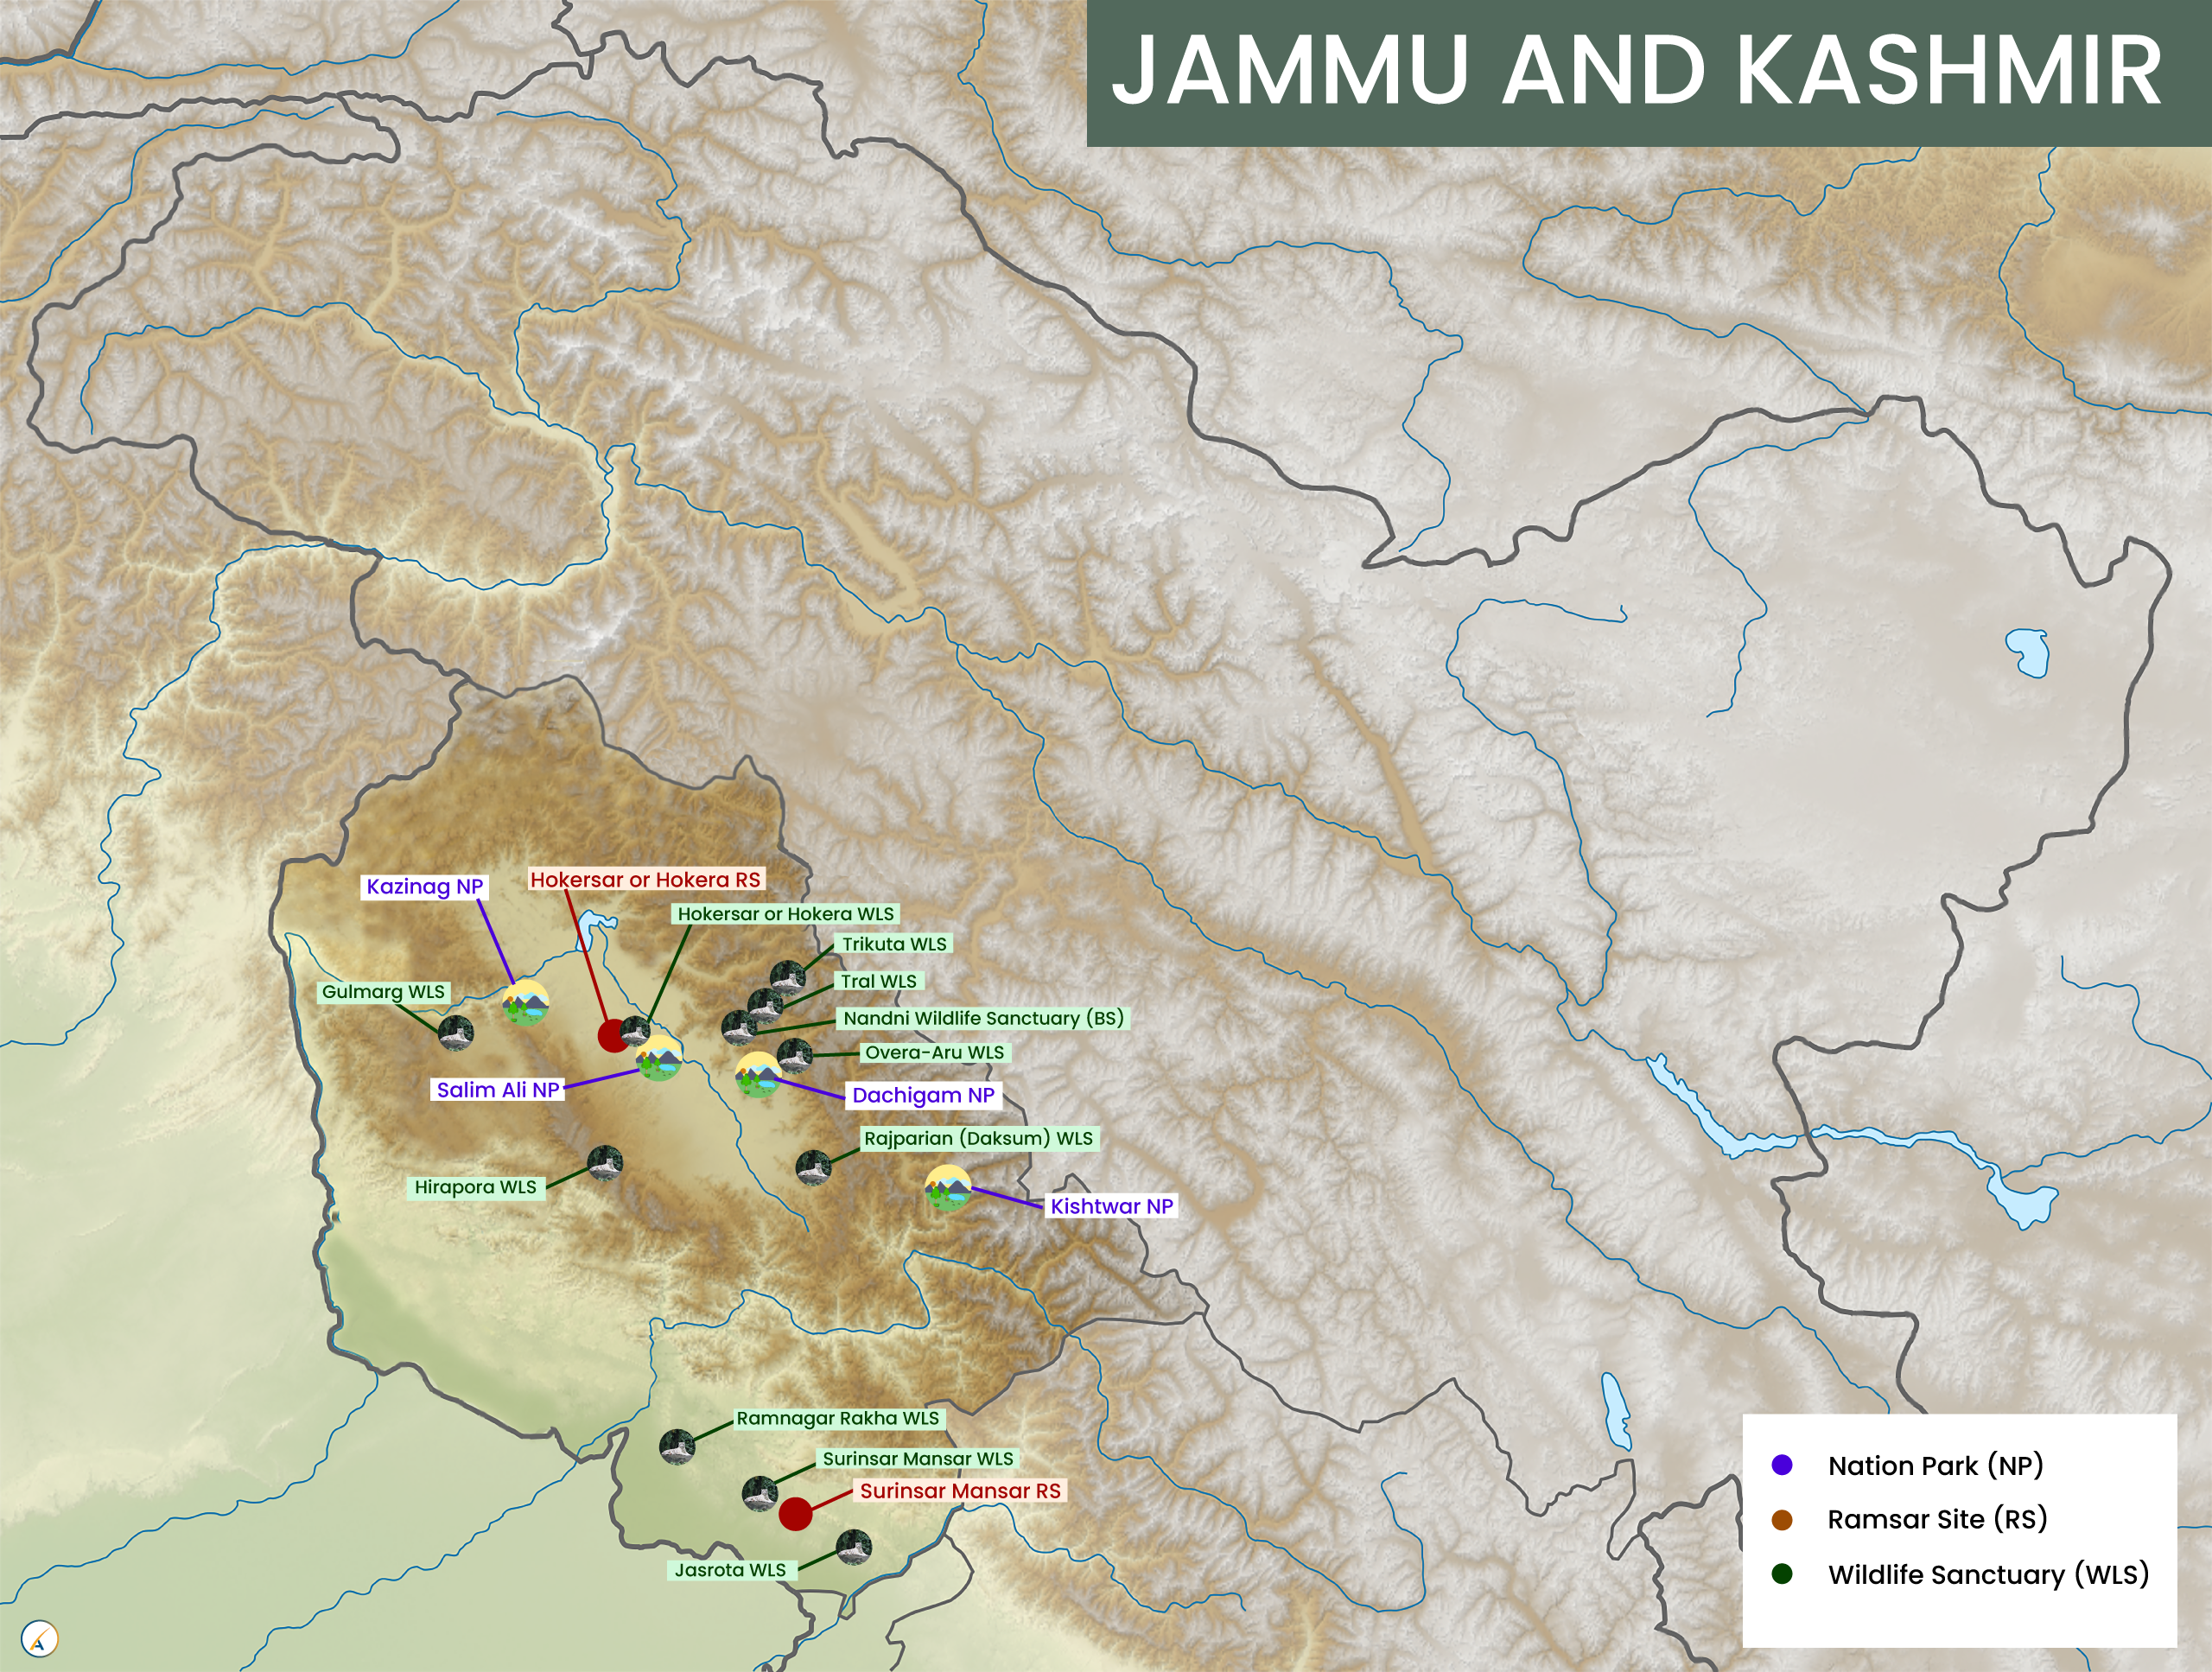 Jammu and Kashmir National Parks, Wildlife Sanctuaries & Ramsar Sites Map